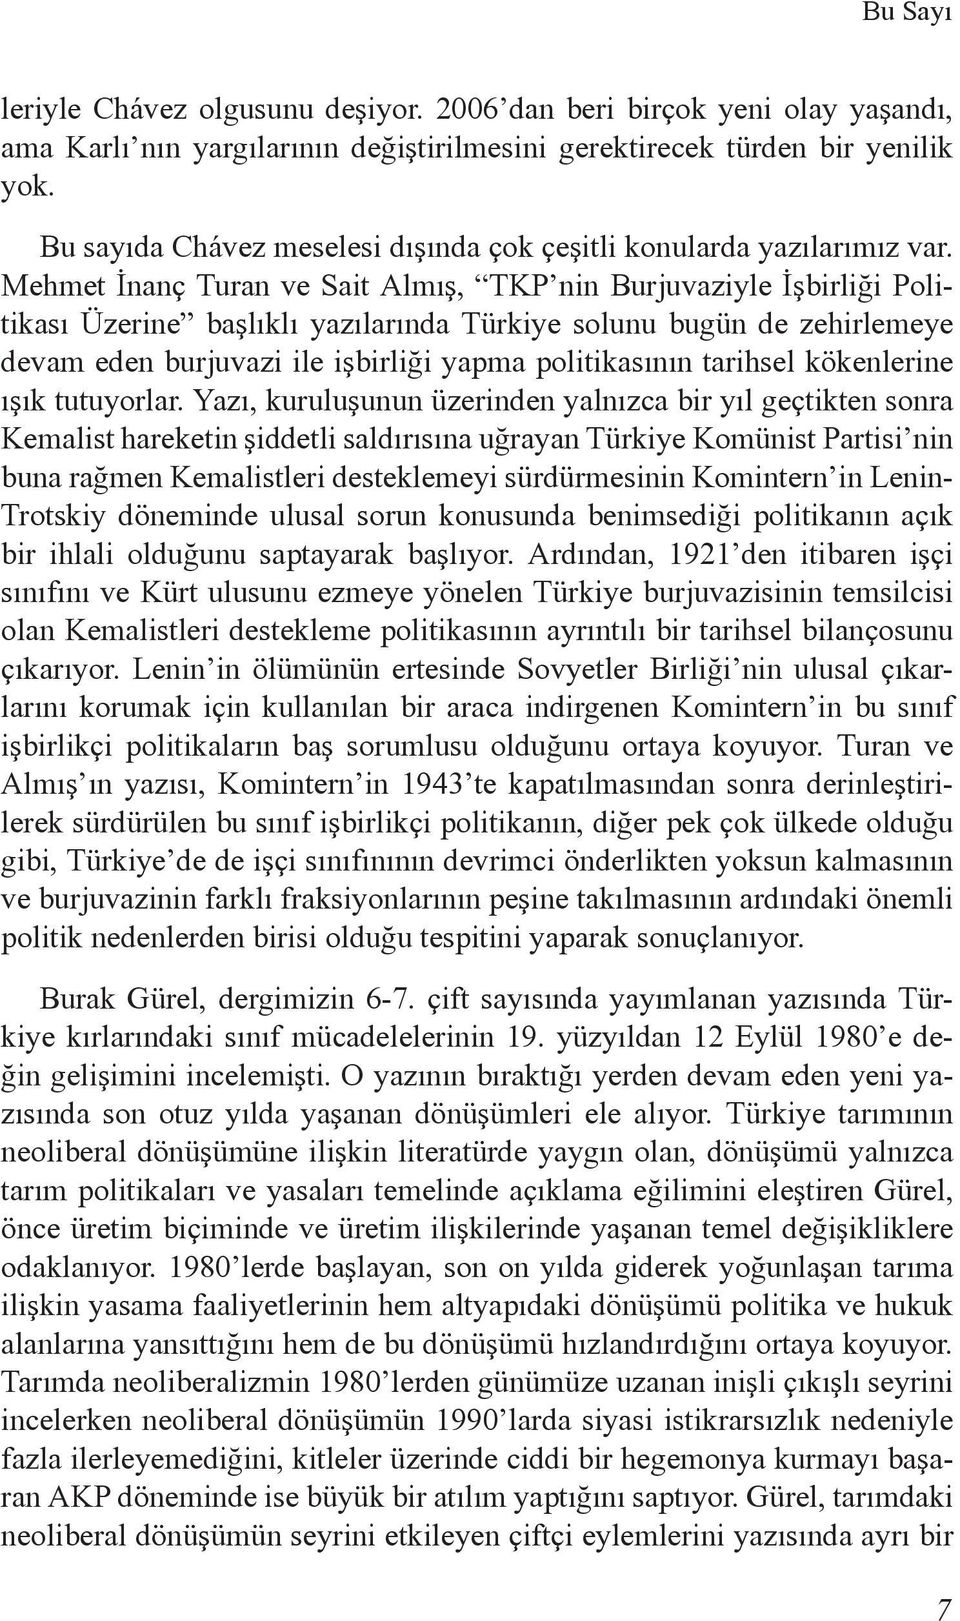 Mehmet İnanç Turan ve Sait Almış, TKP nin Burjuvaziyle İşbirliği Politikası Üzerine başlıklı yazılarında Türkiye solunu bugün de zehirlemeye devam eden burjuvazi ile işbirliği yapma politikasının